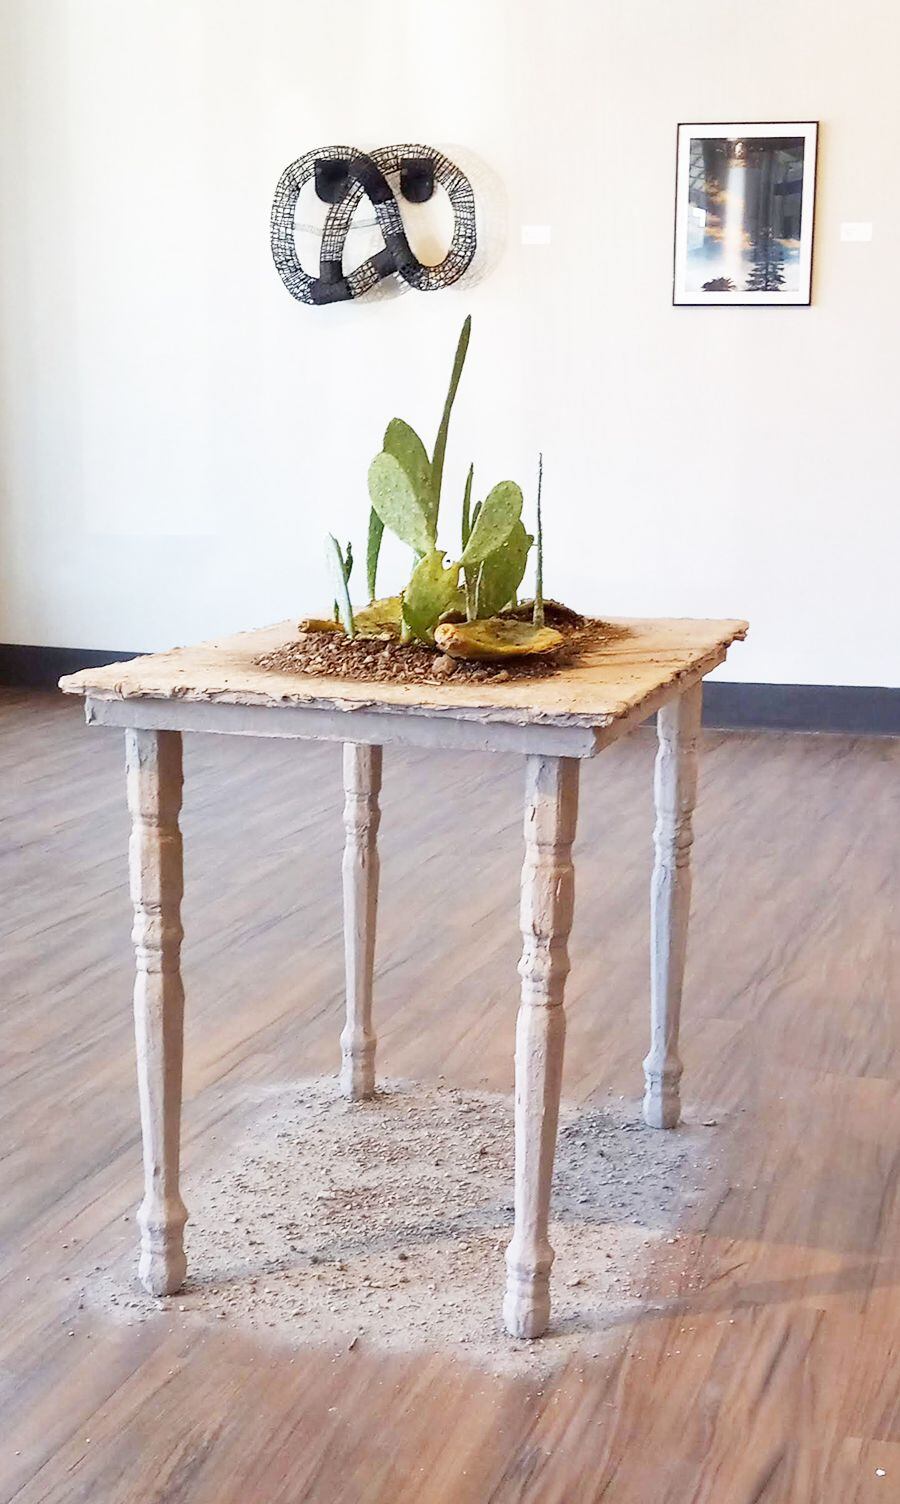 Carla García utiliza tierra y cactus para reconstruir sus paisajes desérticos "Vida." Su trabajo es...